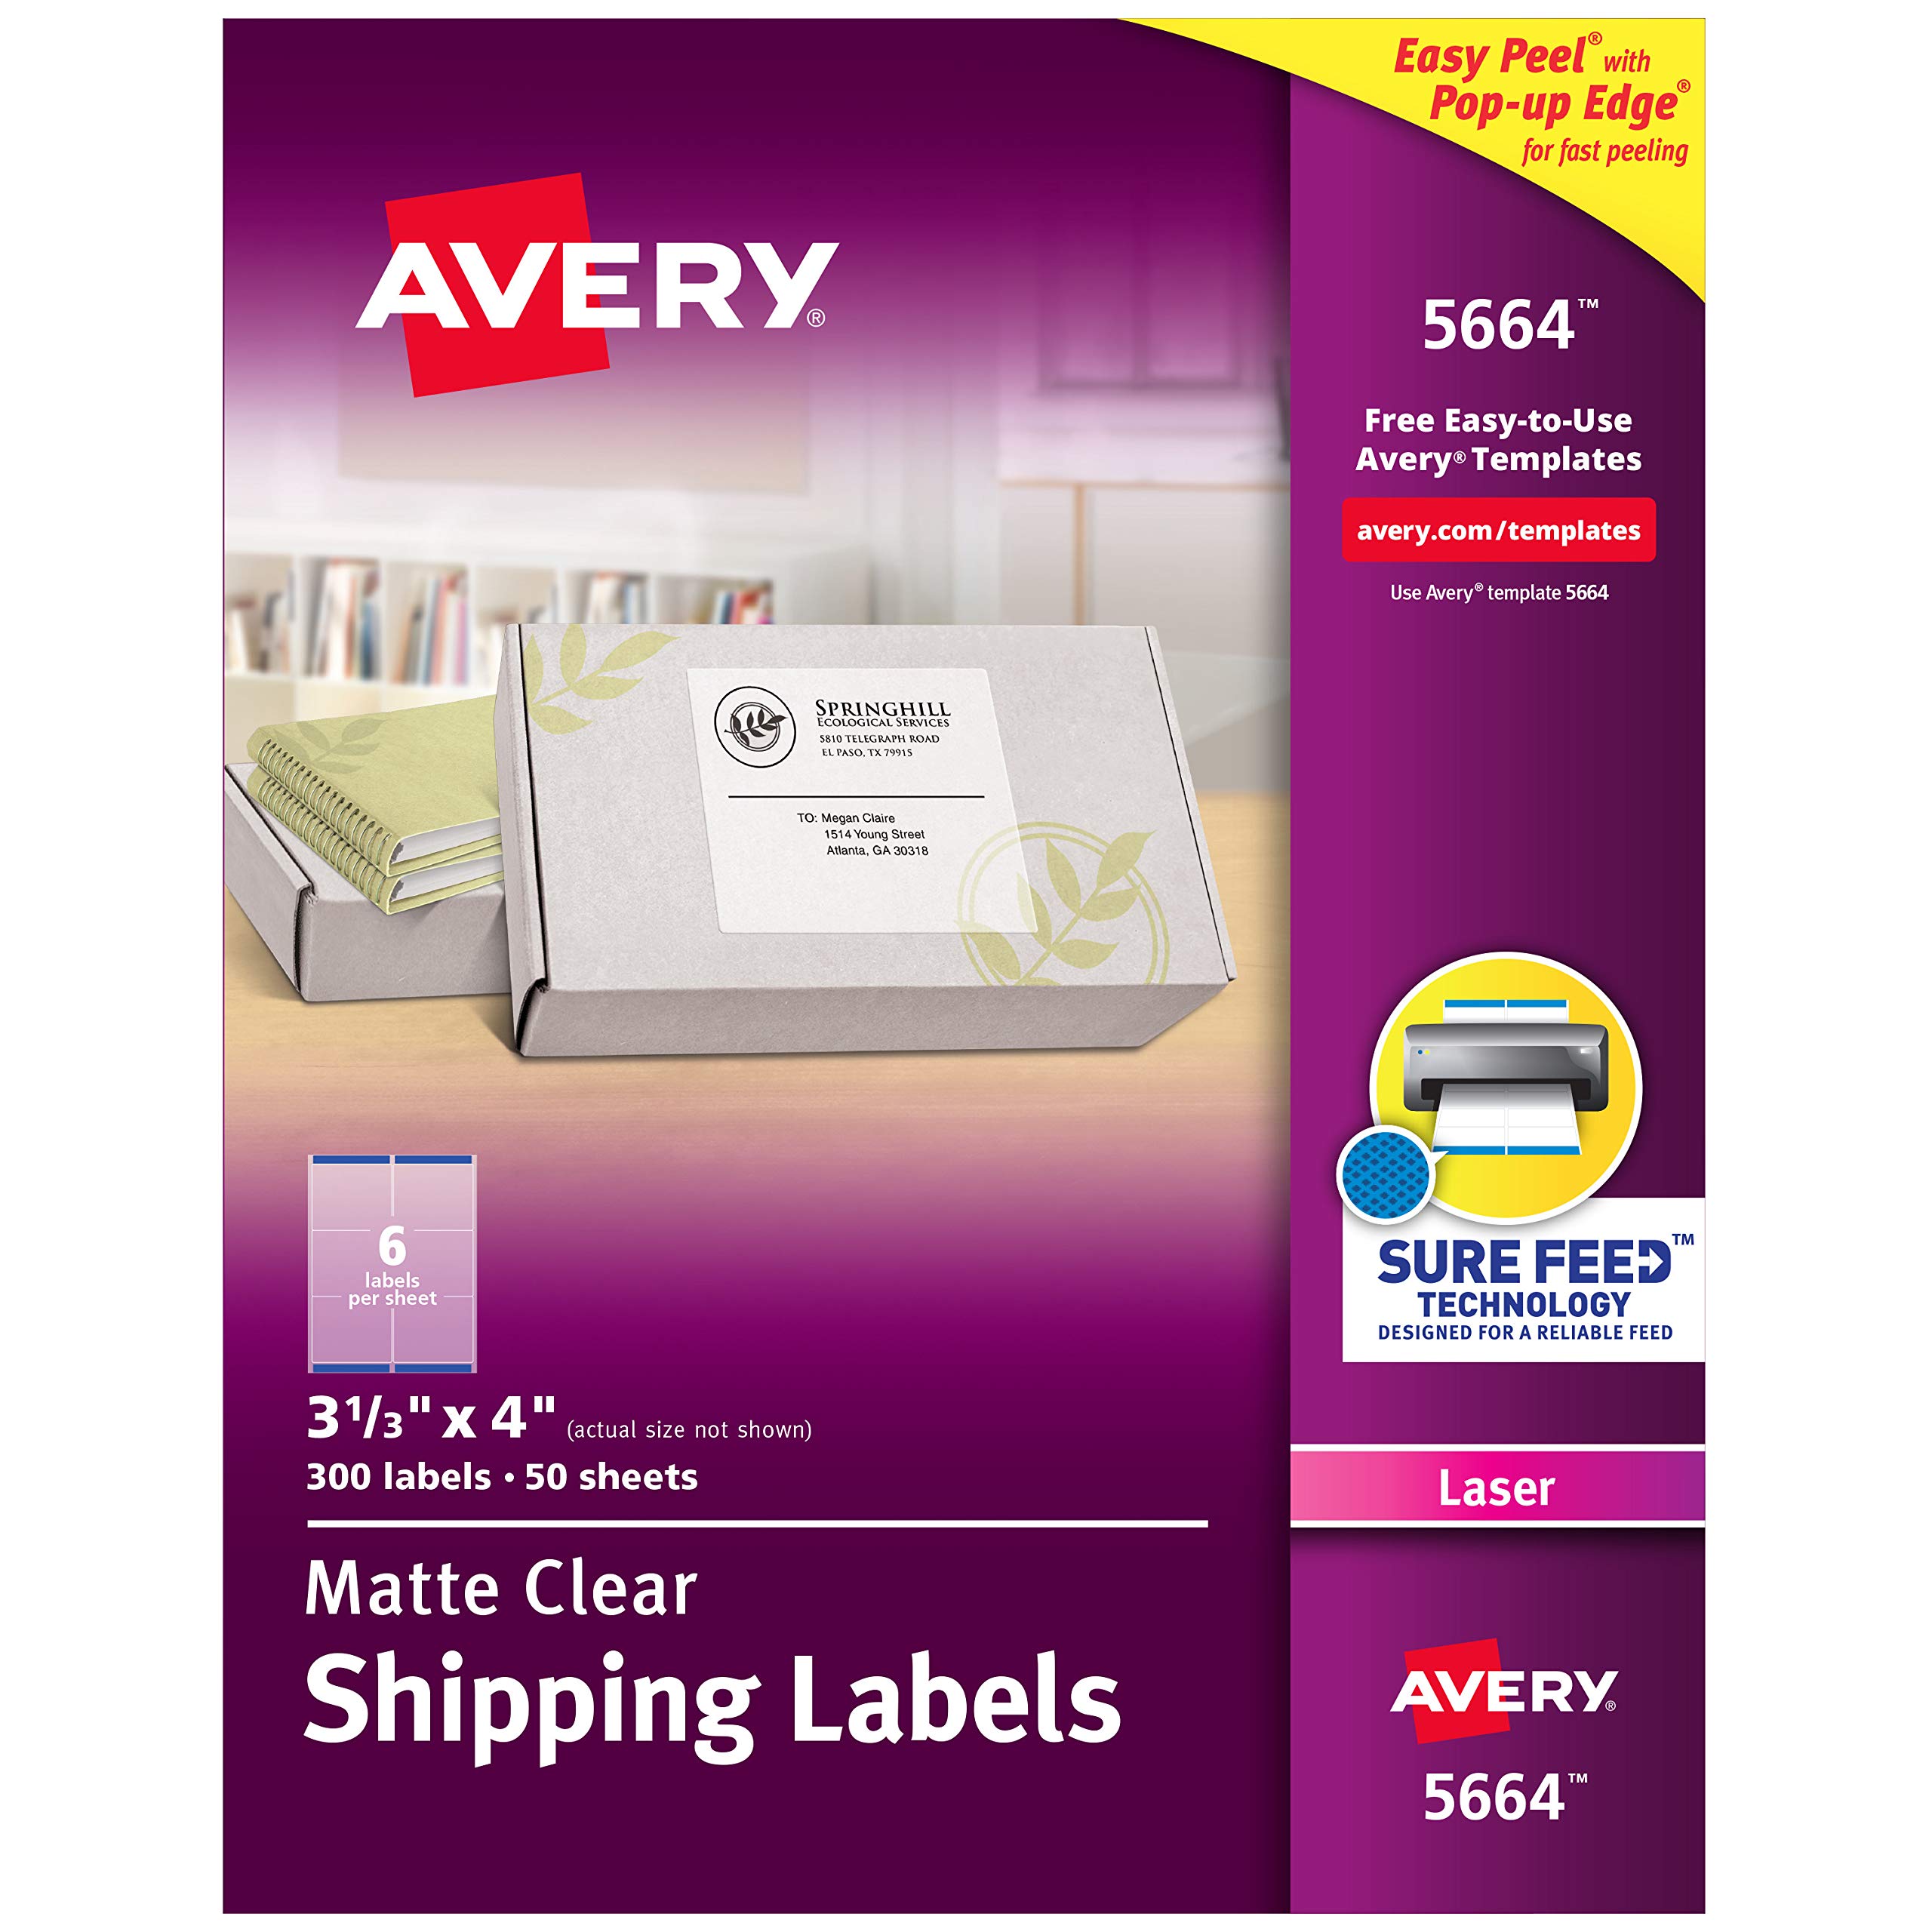 Avery レーザープリンター用マットフロストクリアアドレスラベル、3-1/3 インチ x 4 インチ、300 ラベル、5 パック (5664)